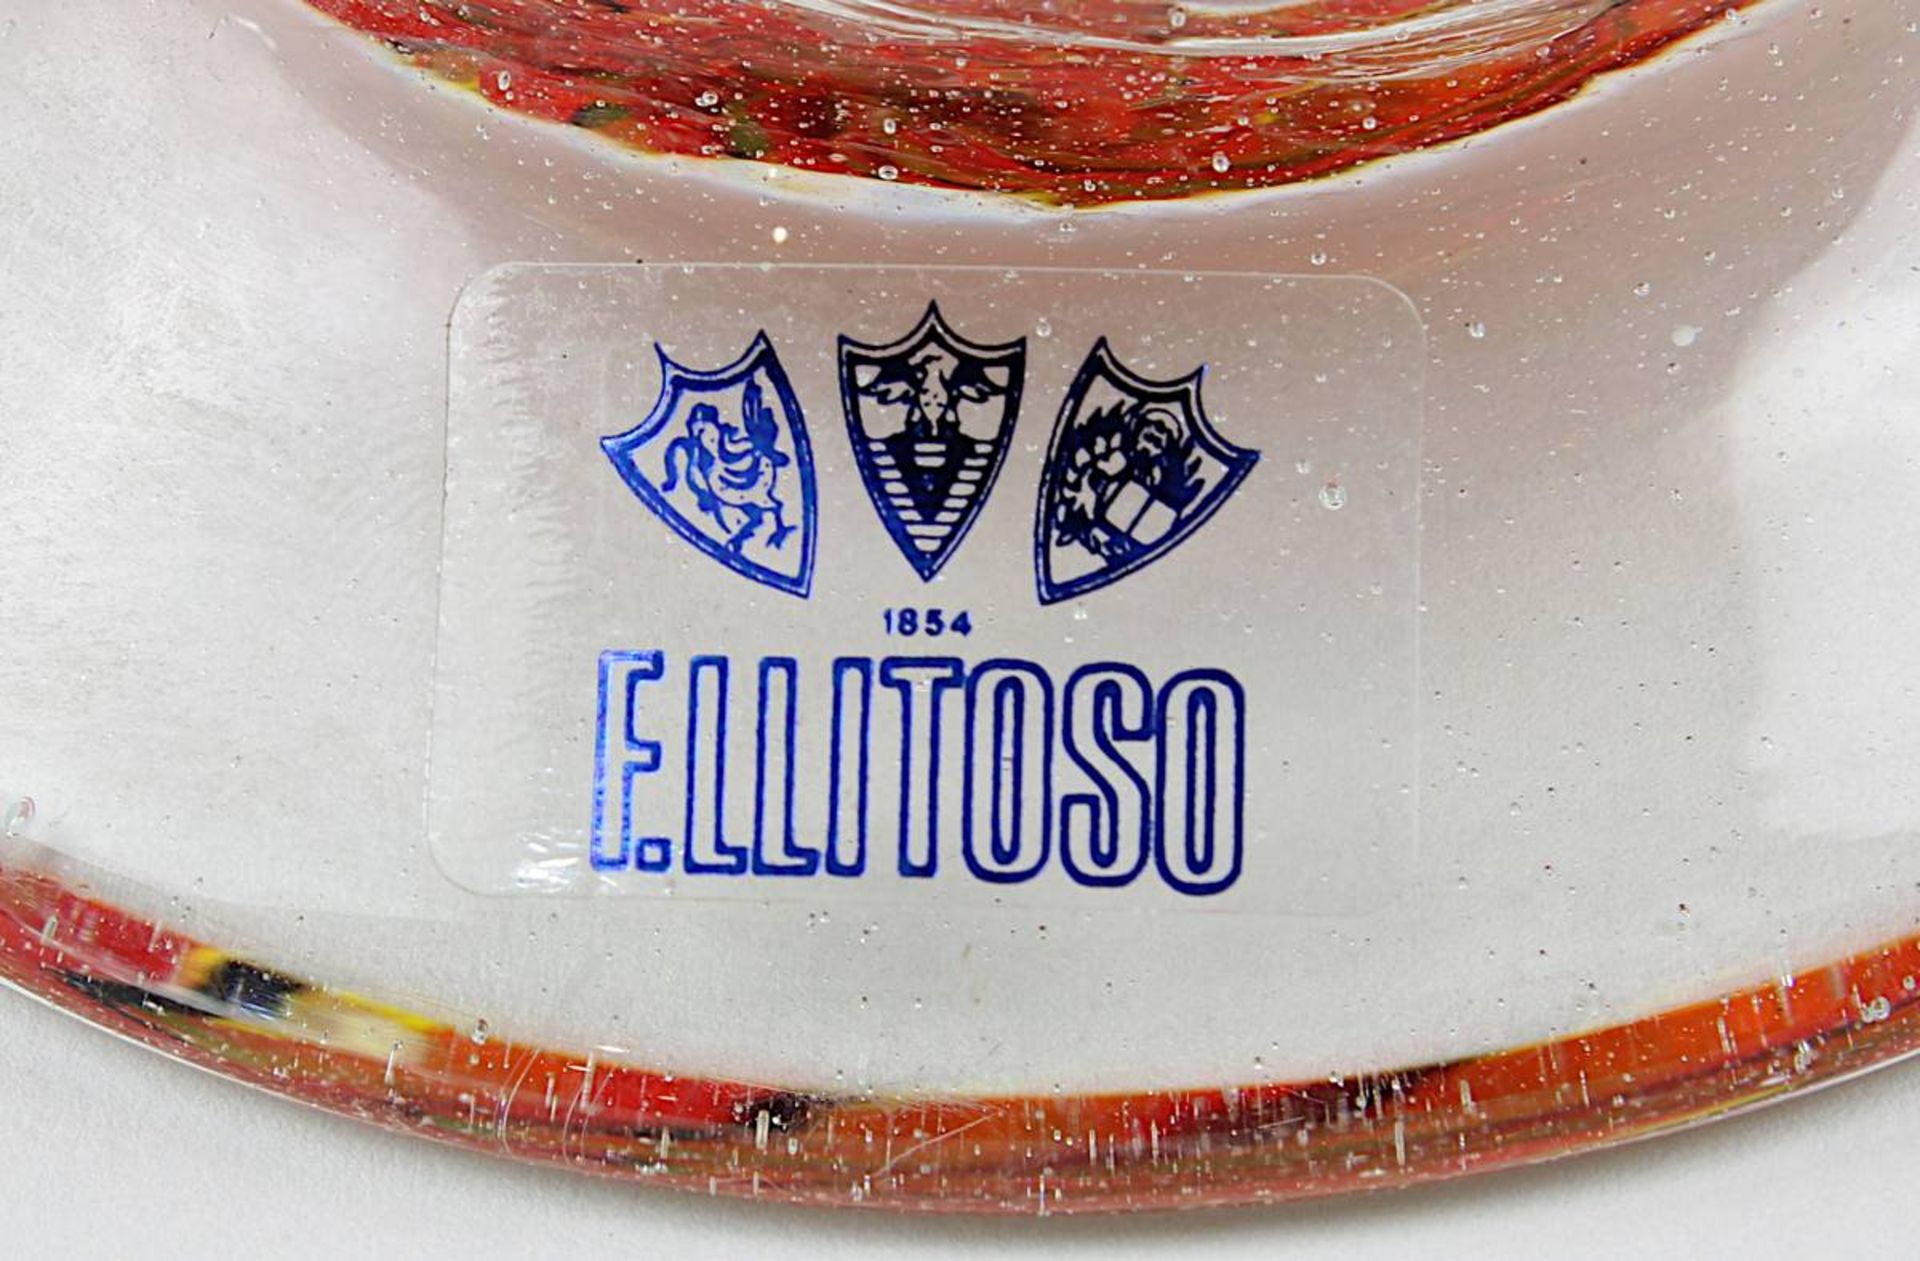 Murano Glasvase mit Glasfäden, Elli Toso, um 1990, amphorenförmiger Glaskörper mit in Spiralform - Bild 2 aus 2